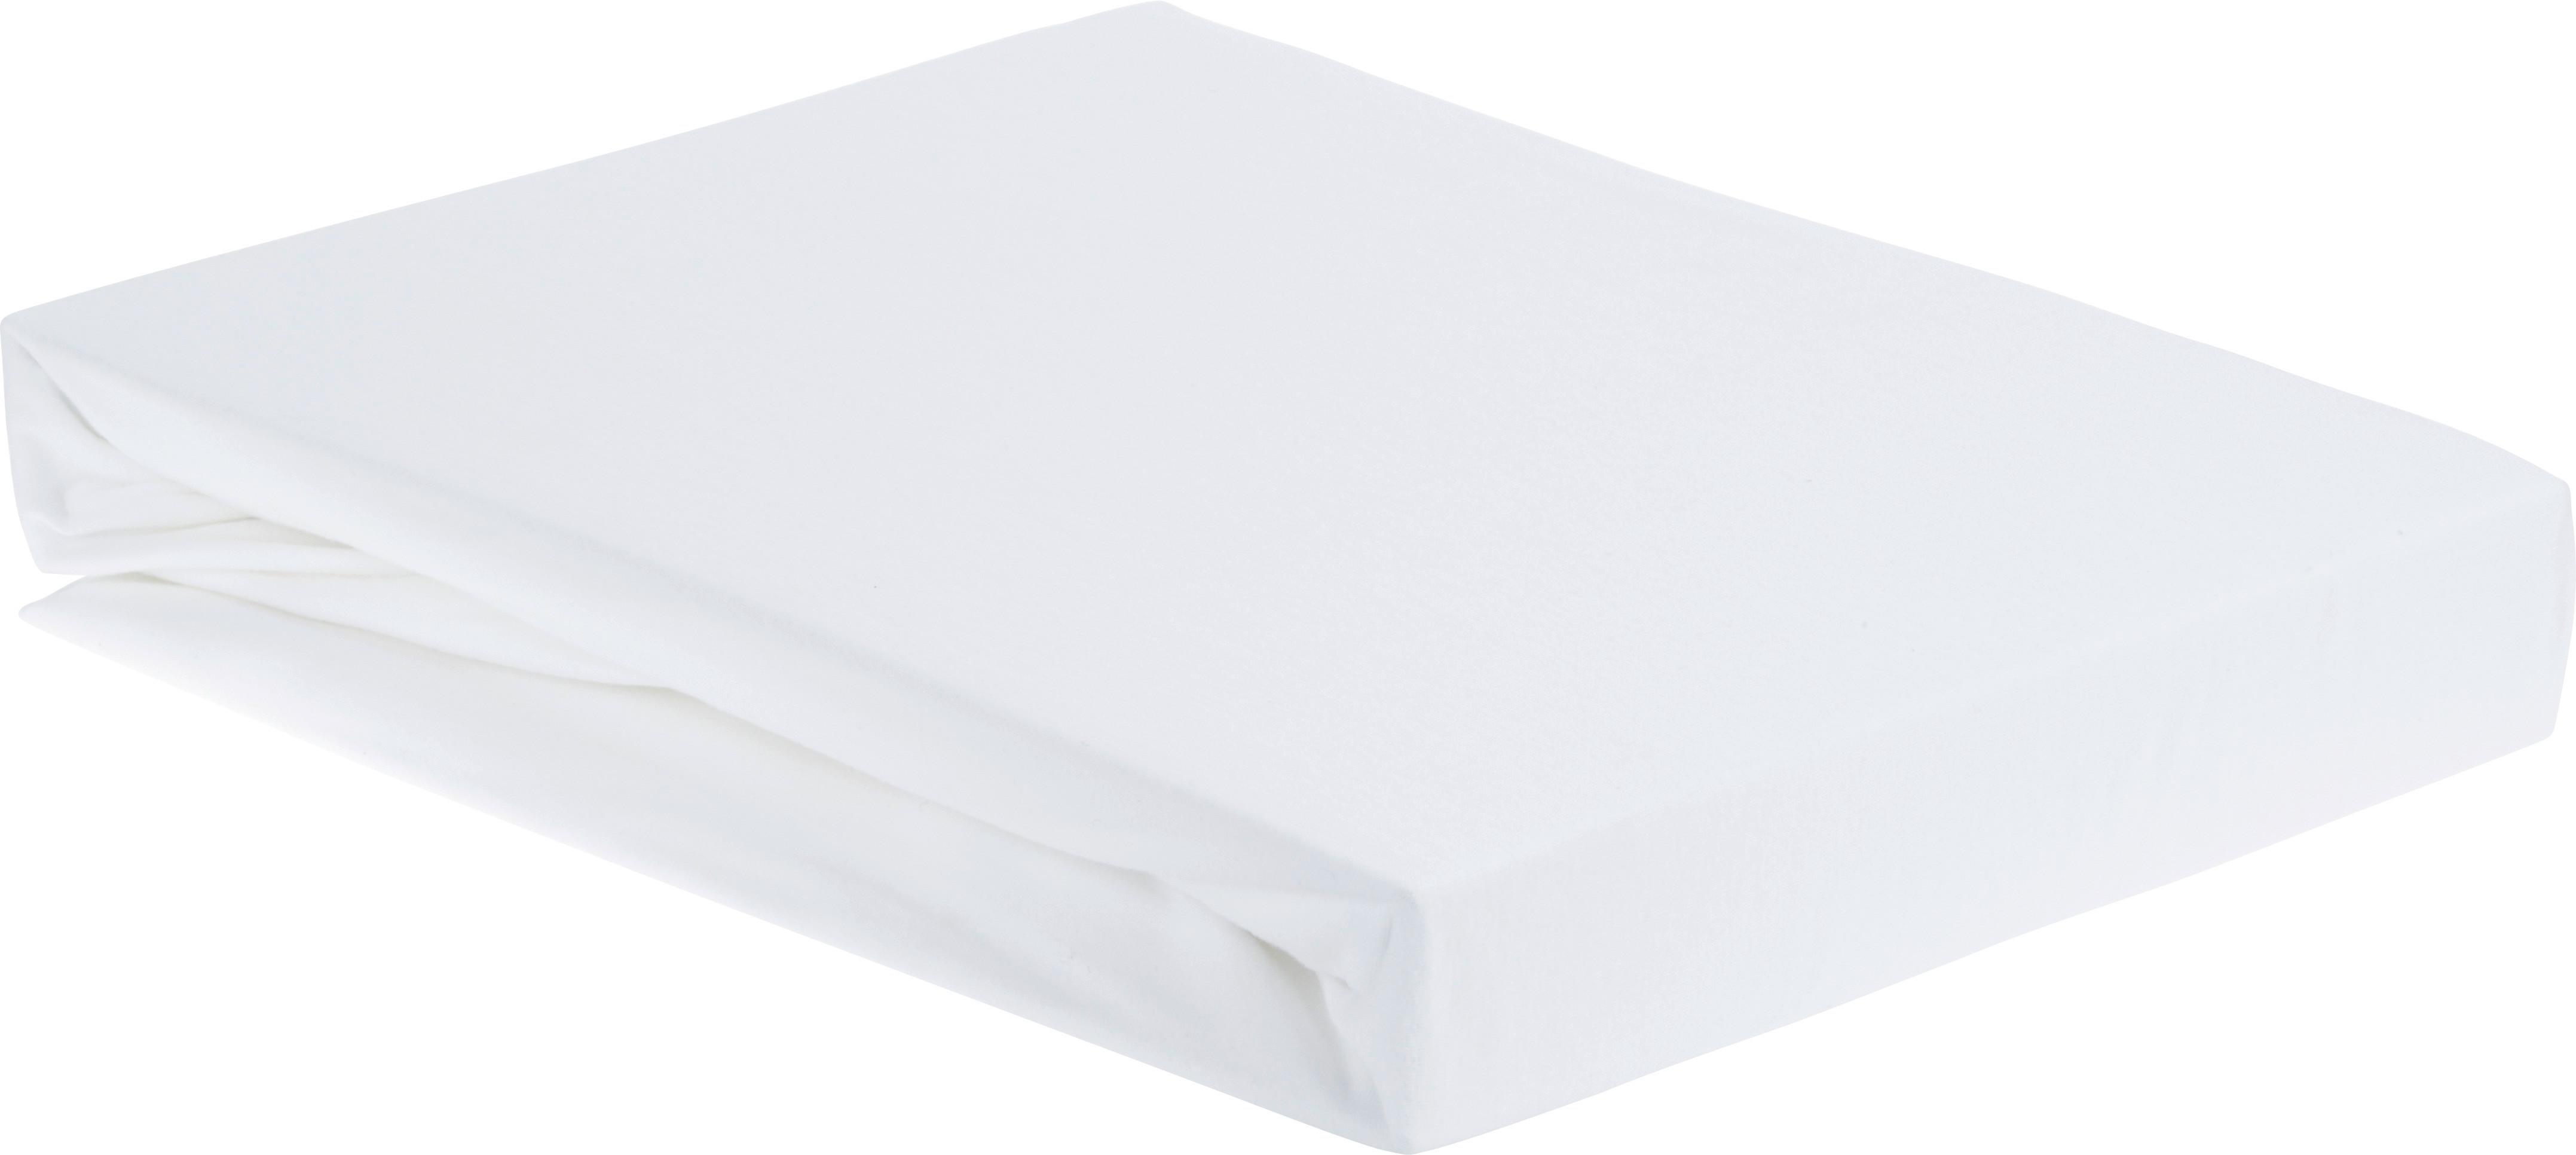 Spannbetttuch Elasthan ca. 100x200cm - Weiß, Textil (100/200/28cm) - Premium Living